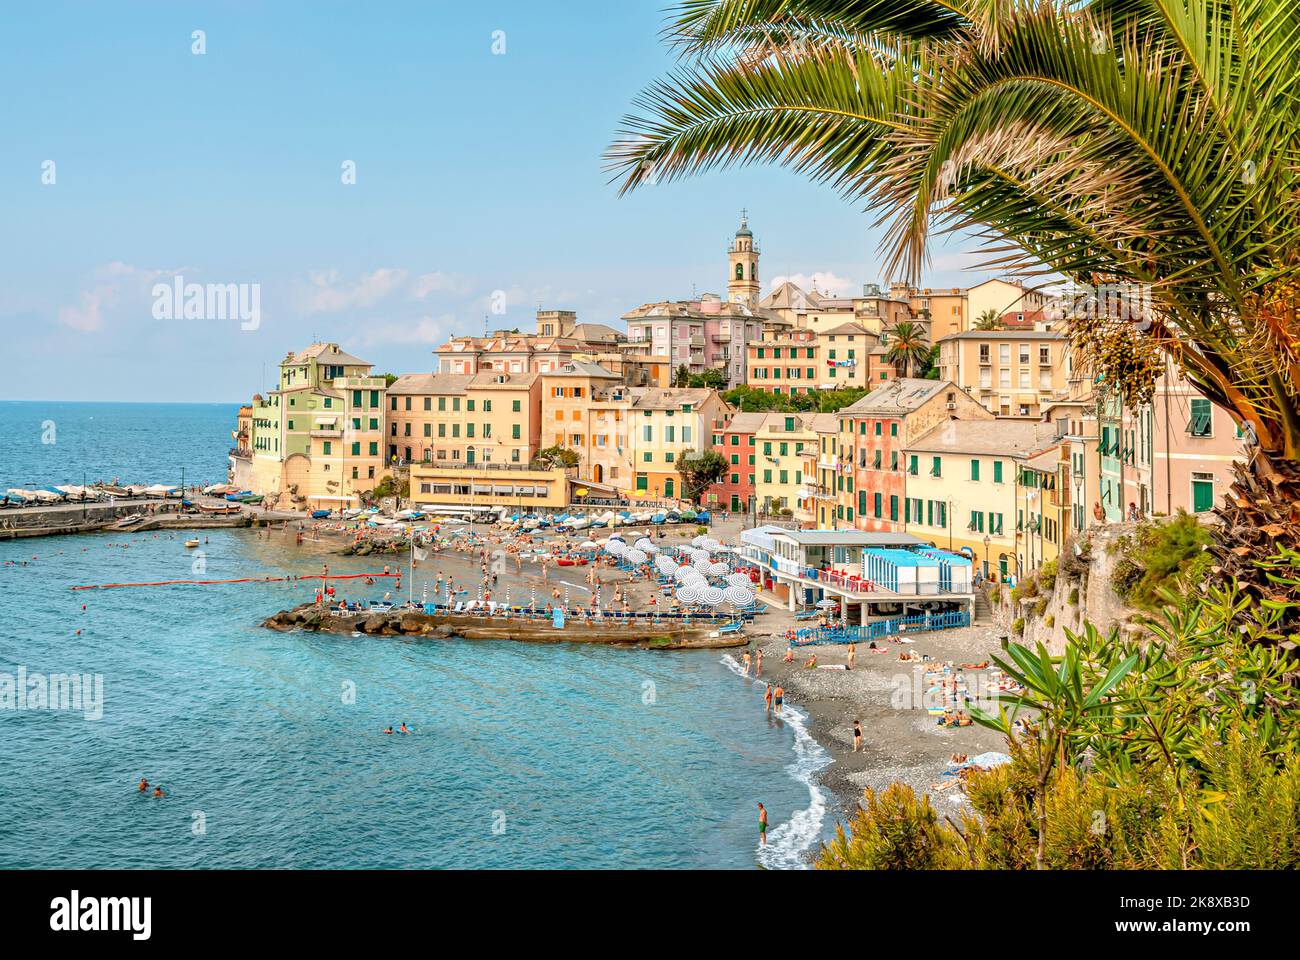 Scenic view at Bogliasco, Rivera di Levante, Liguria, Italy Stock Photo